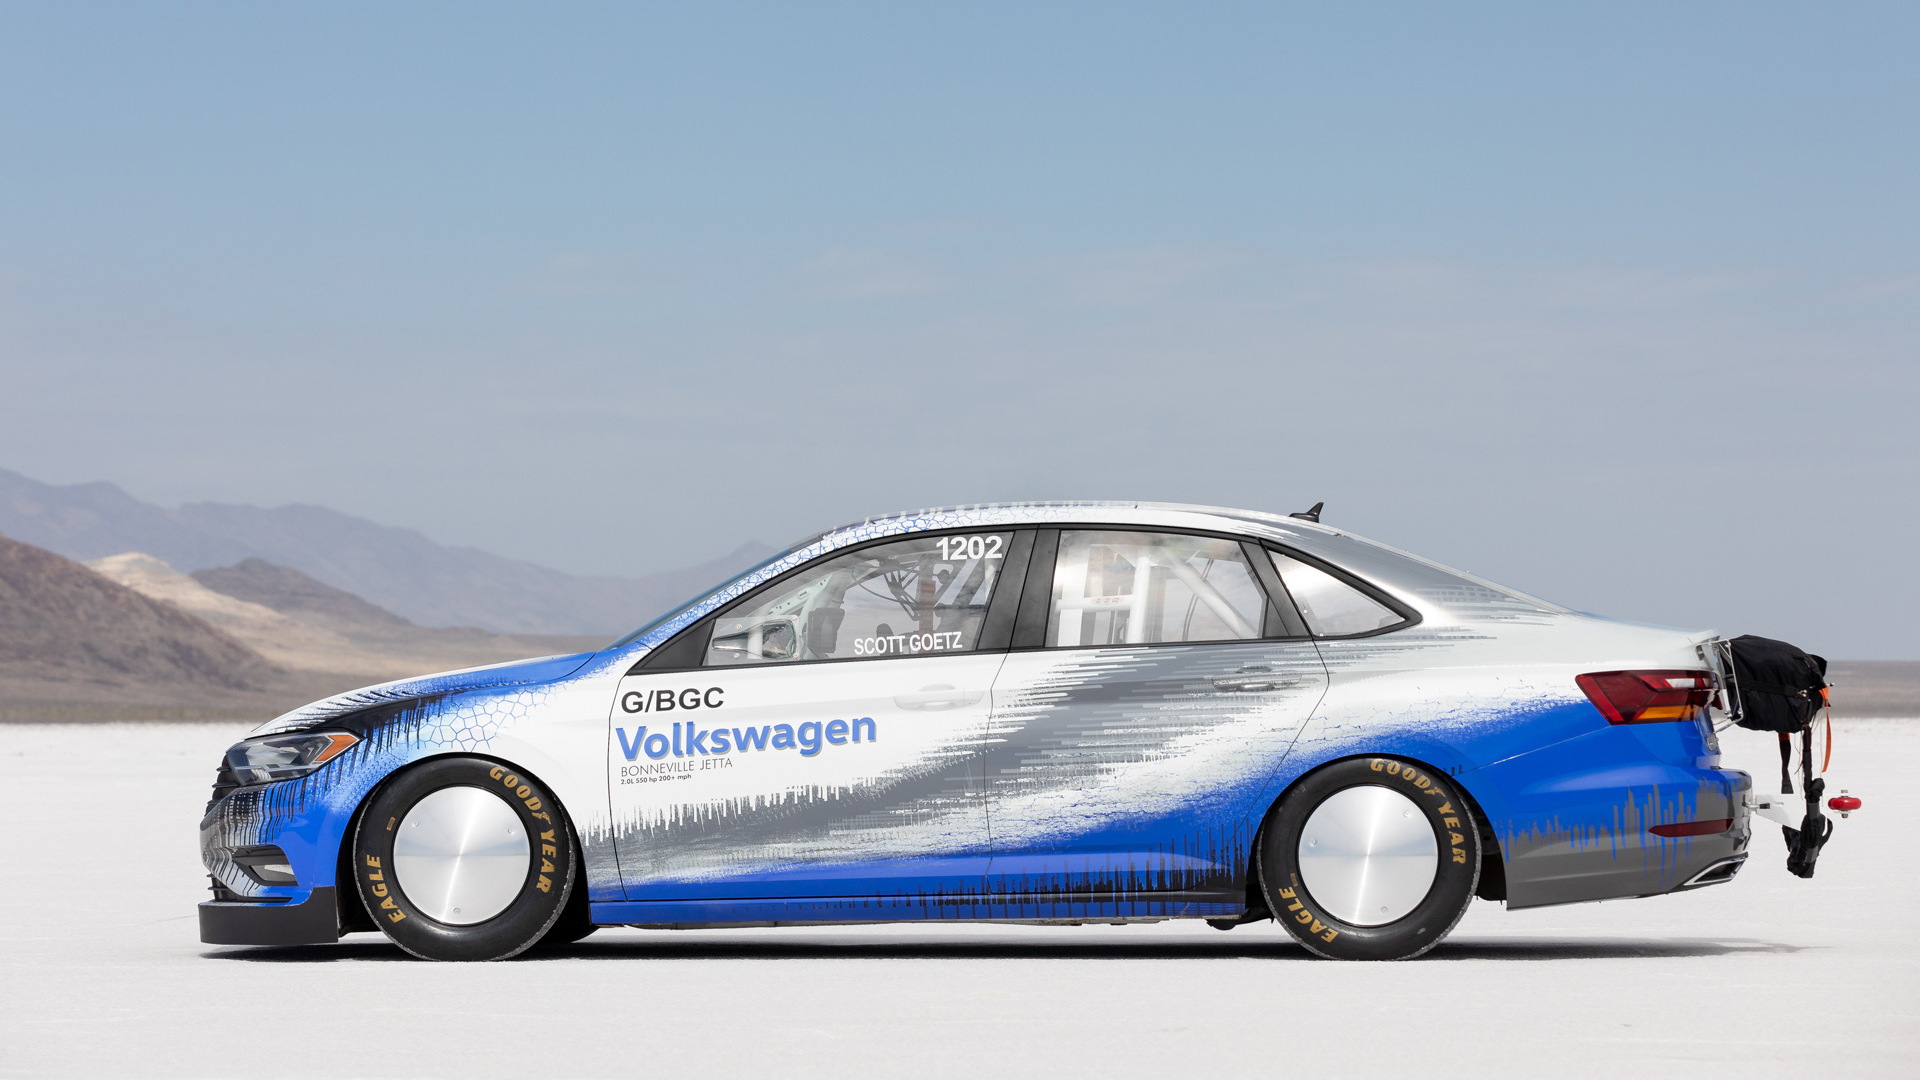 2019 Volkswagen Jetta Bonneville Salt Flats racer during Sept. 2018 speed record attempt